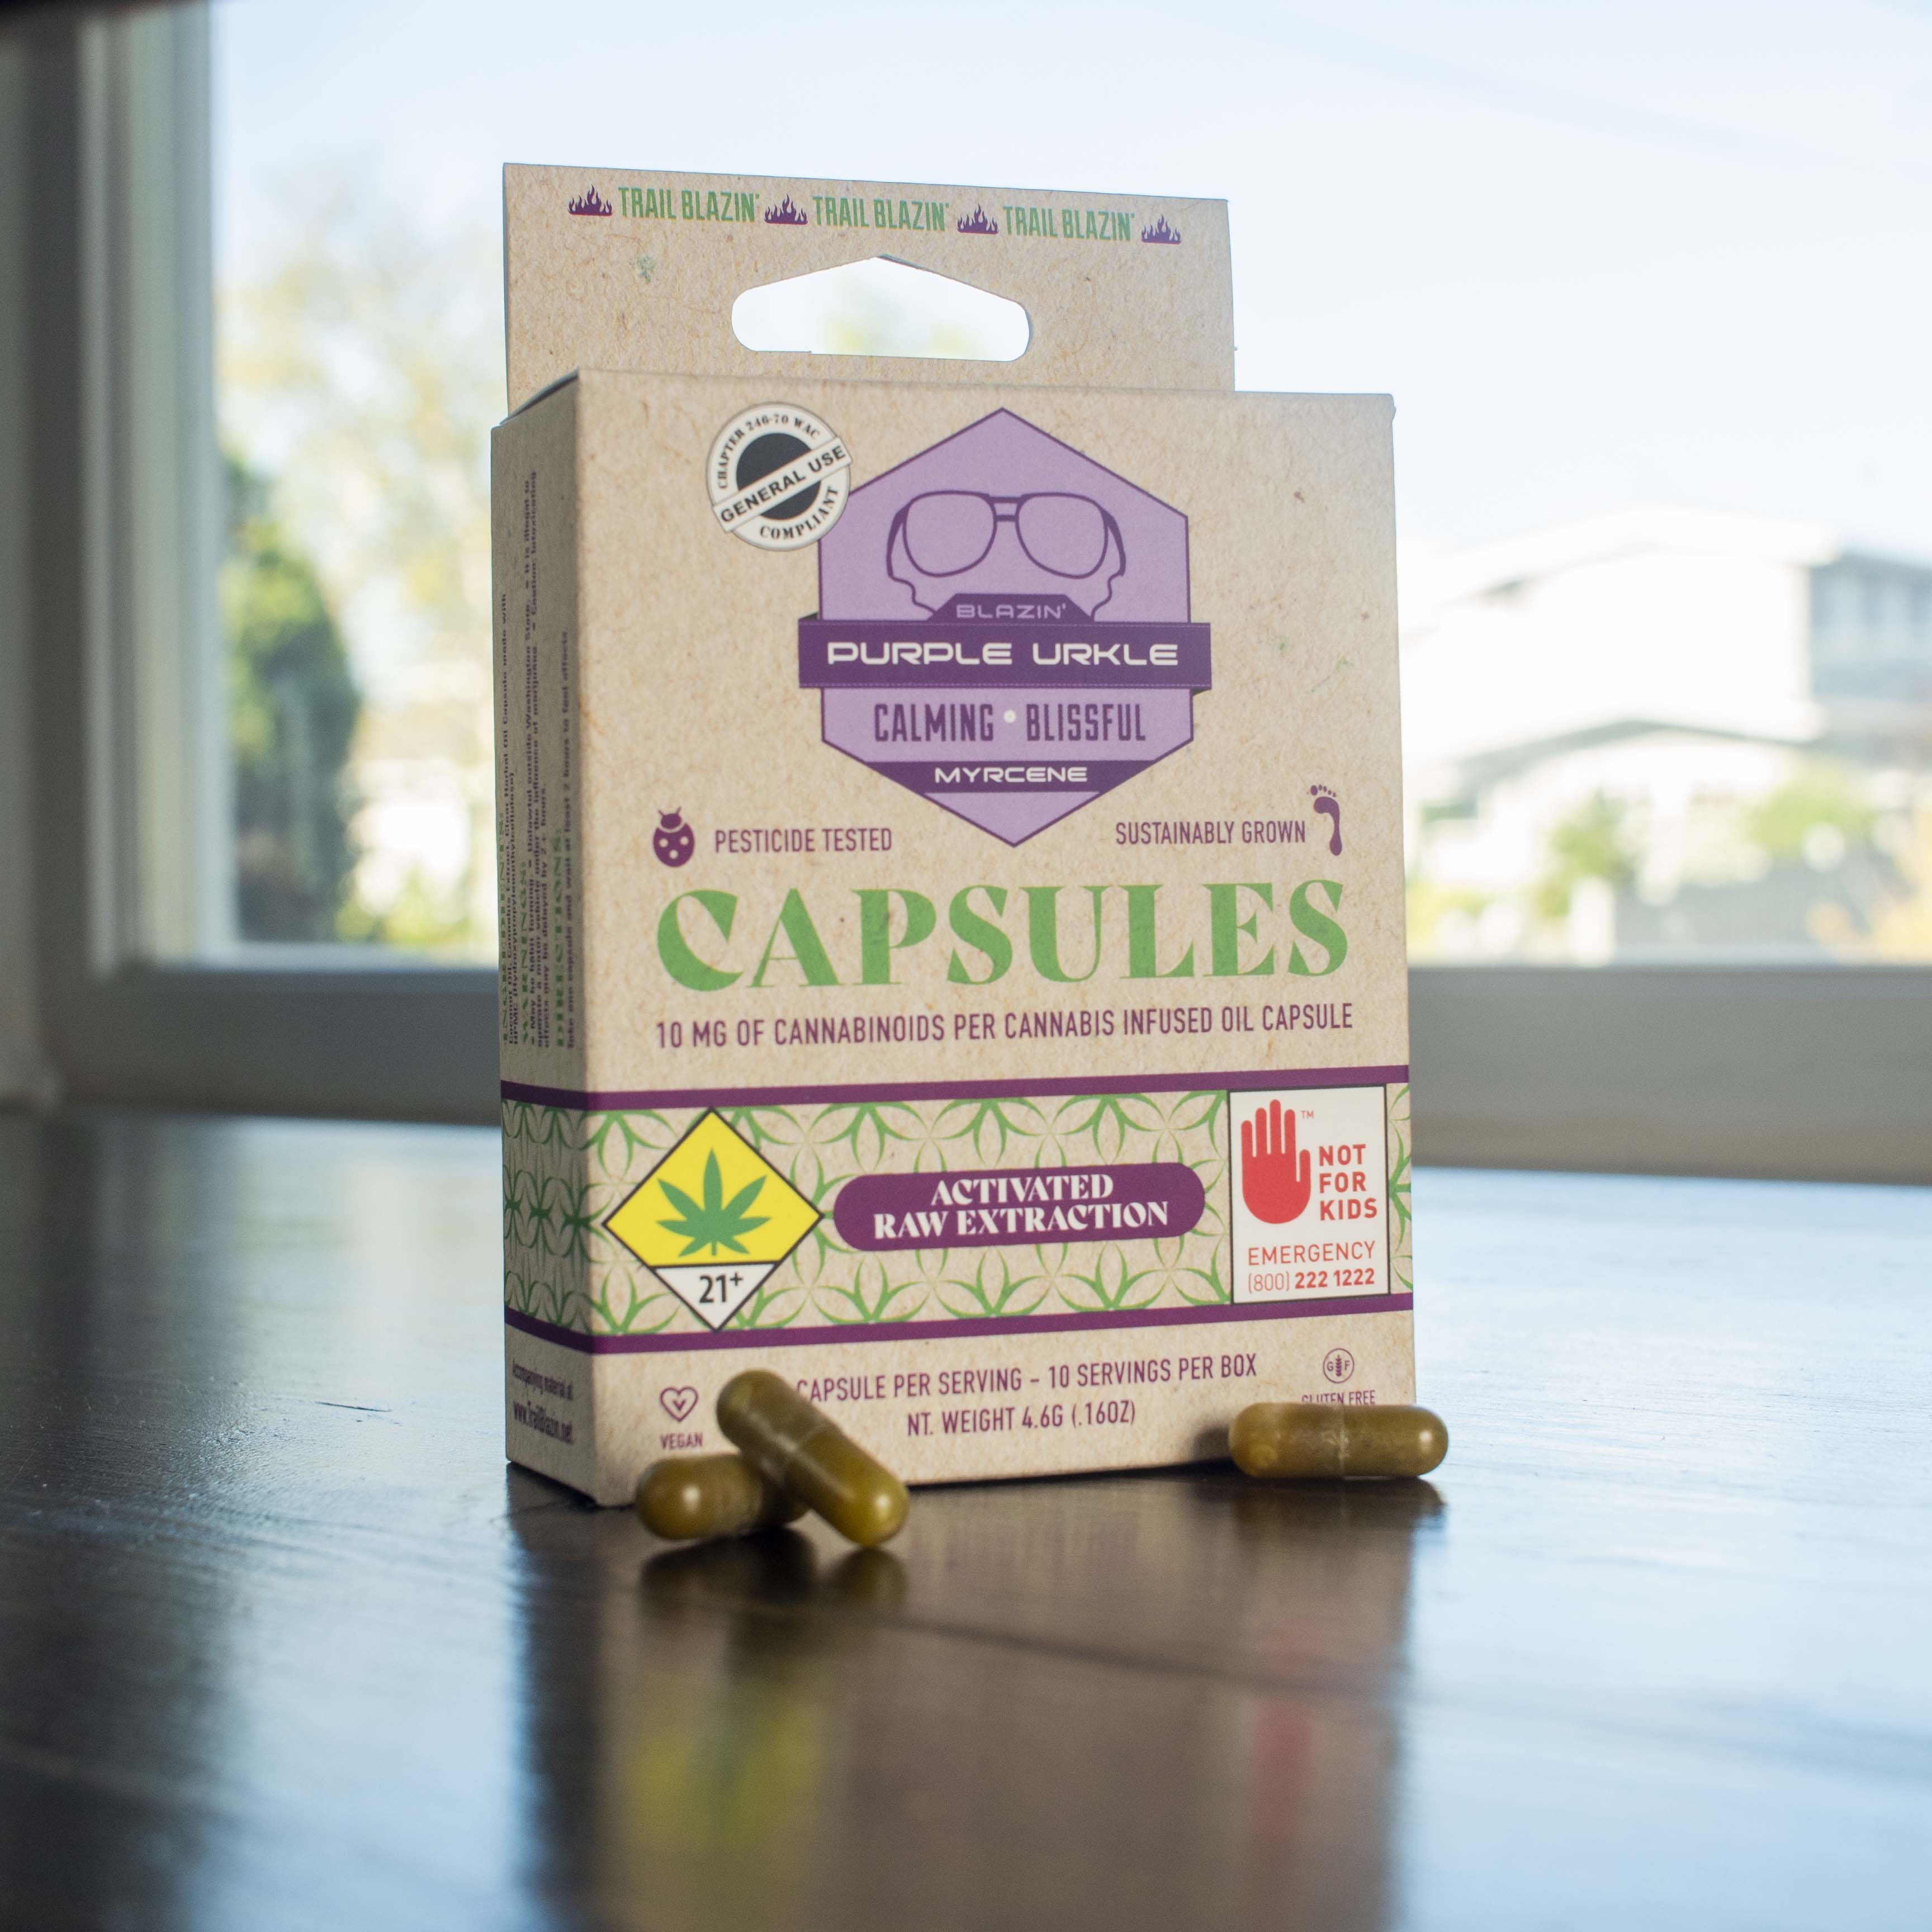 Purple Urkle capsule box with capsules.